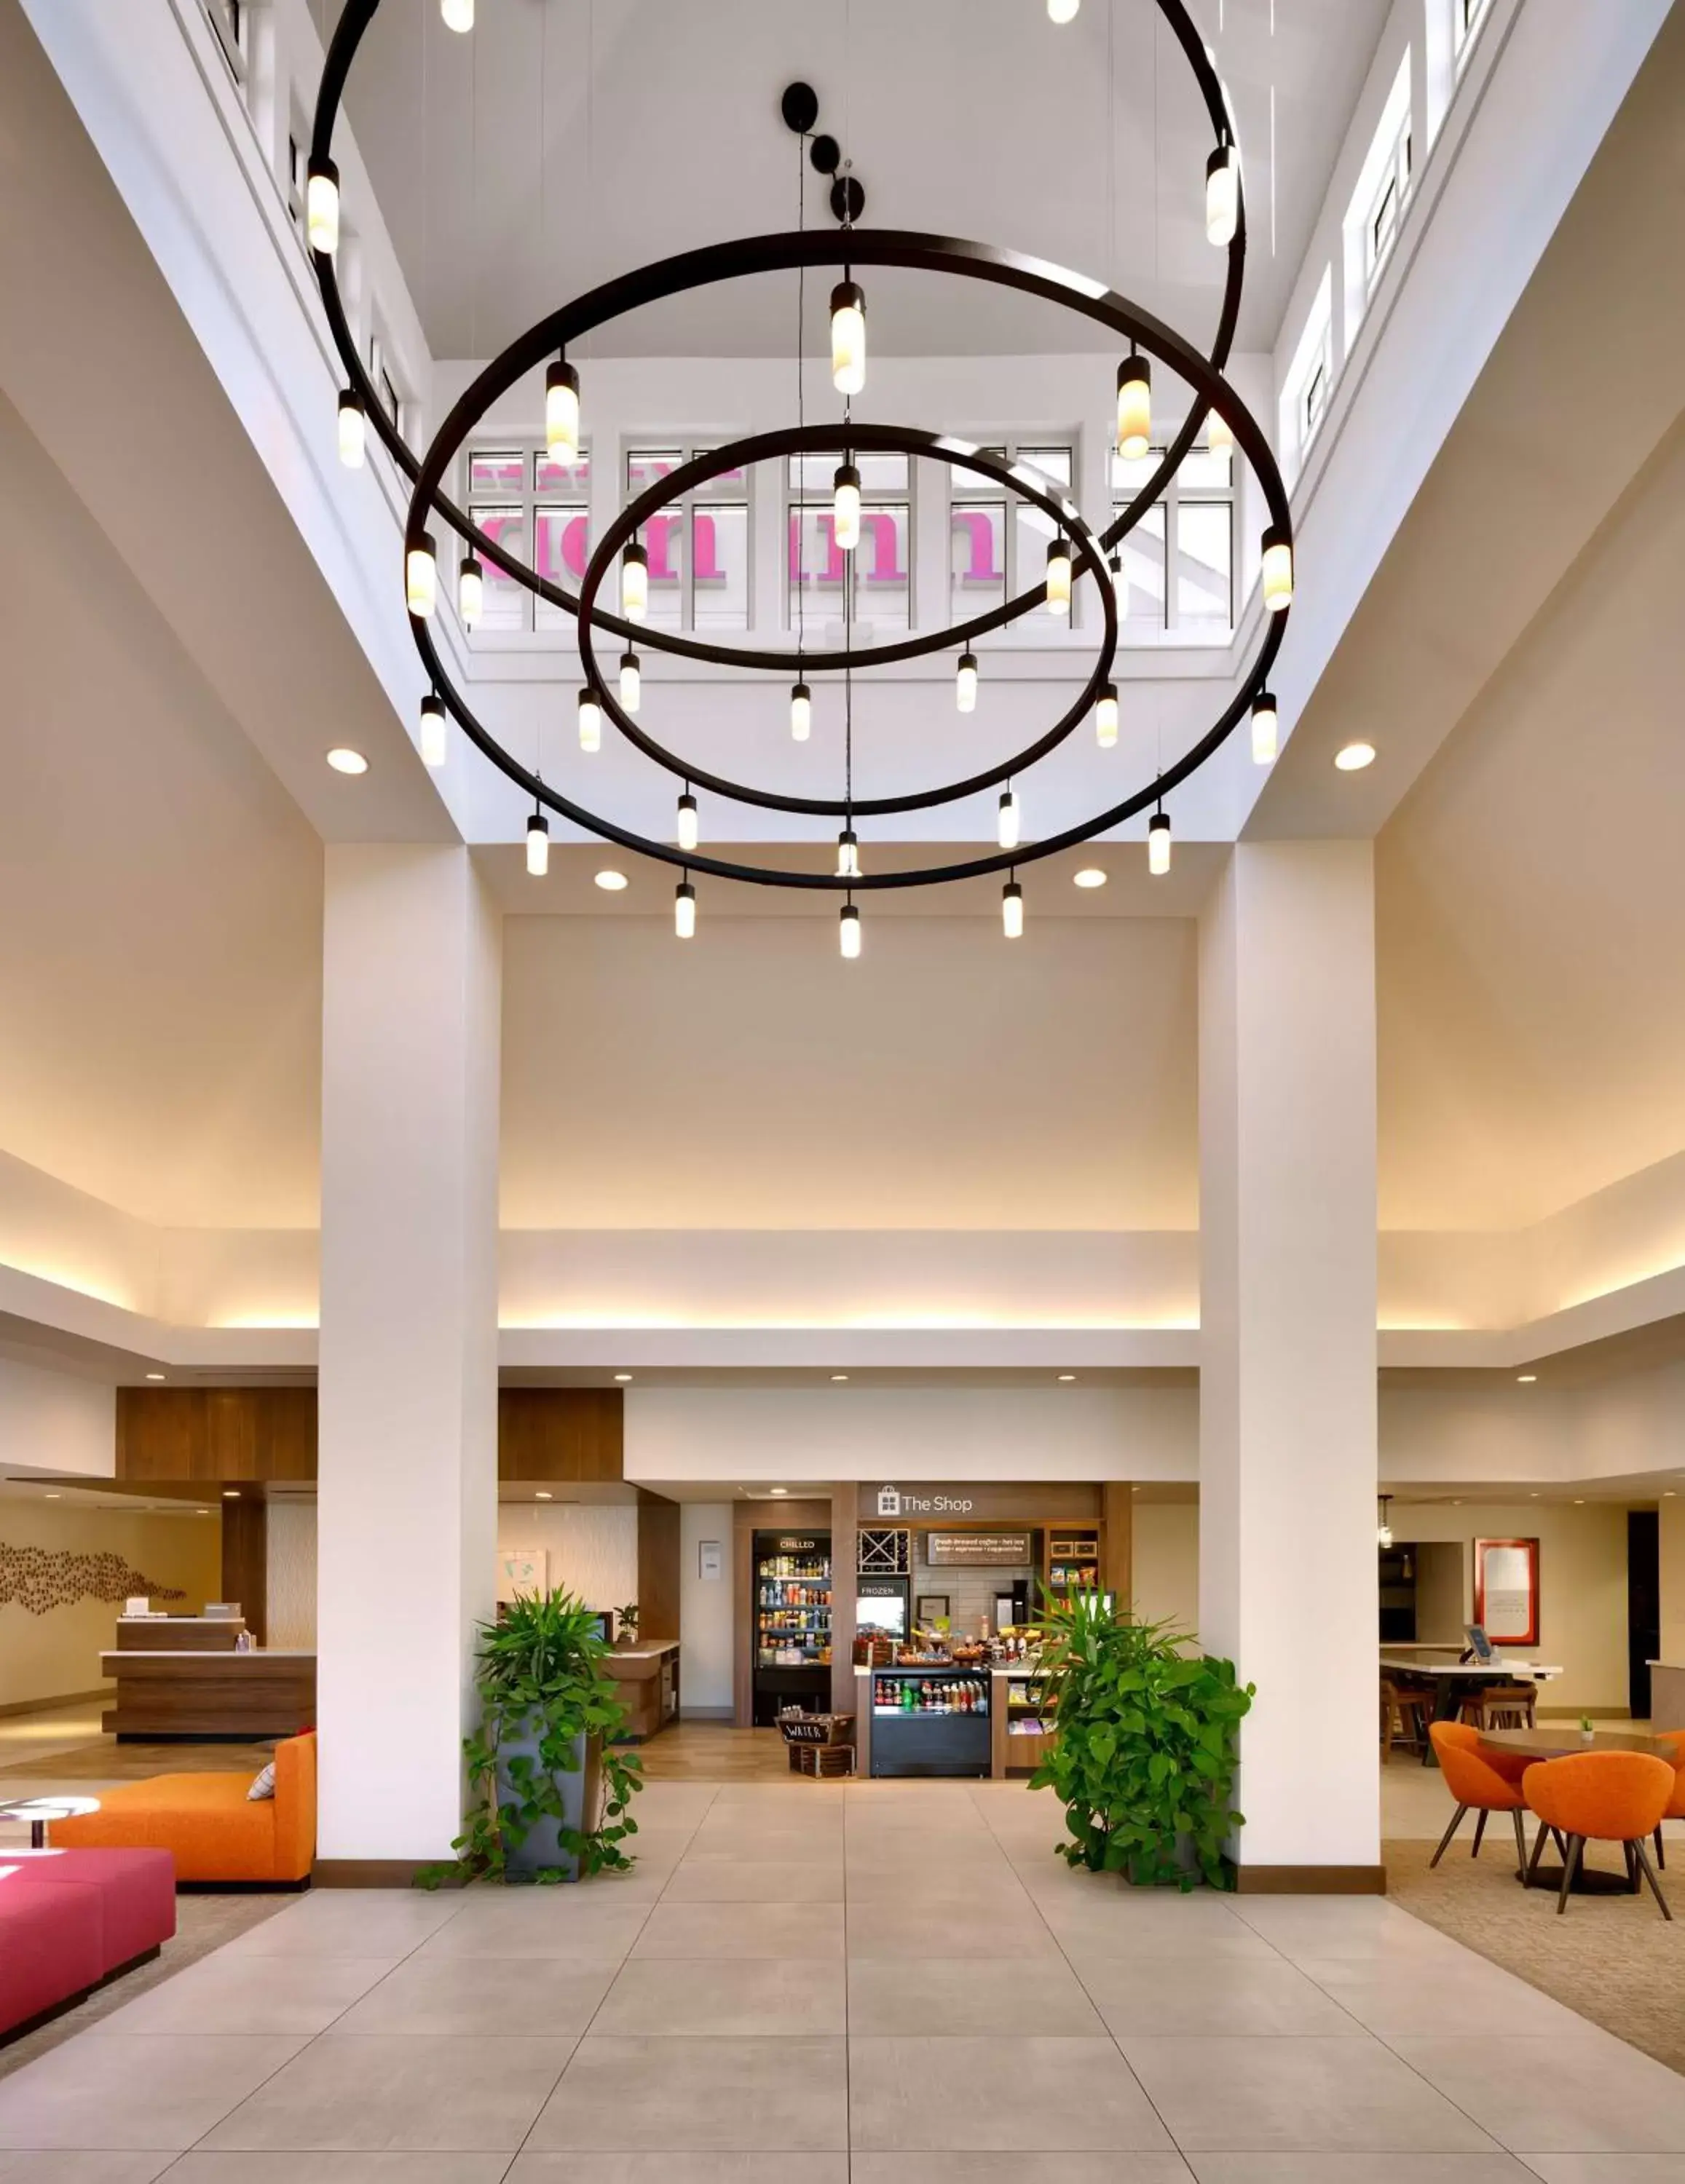 Lobby or reception, Lobby/Reception in Hilton Garden Inn Idaho Falls